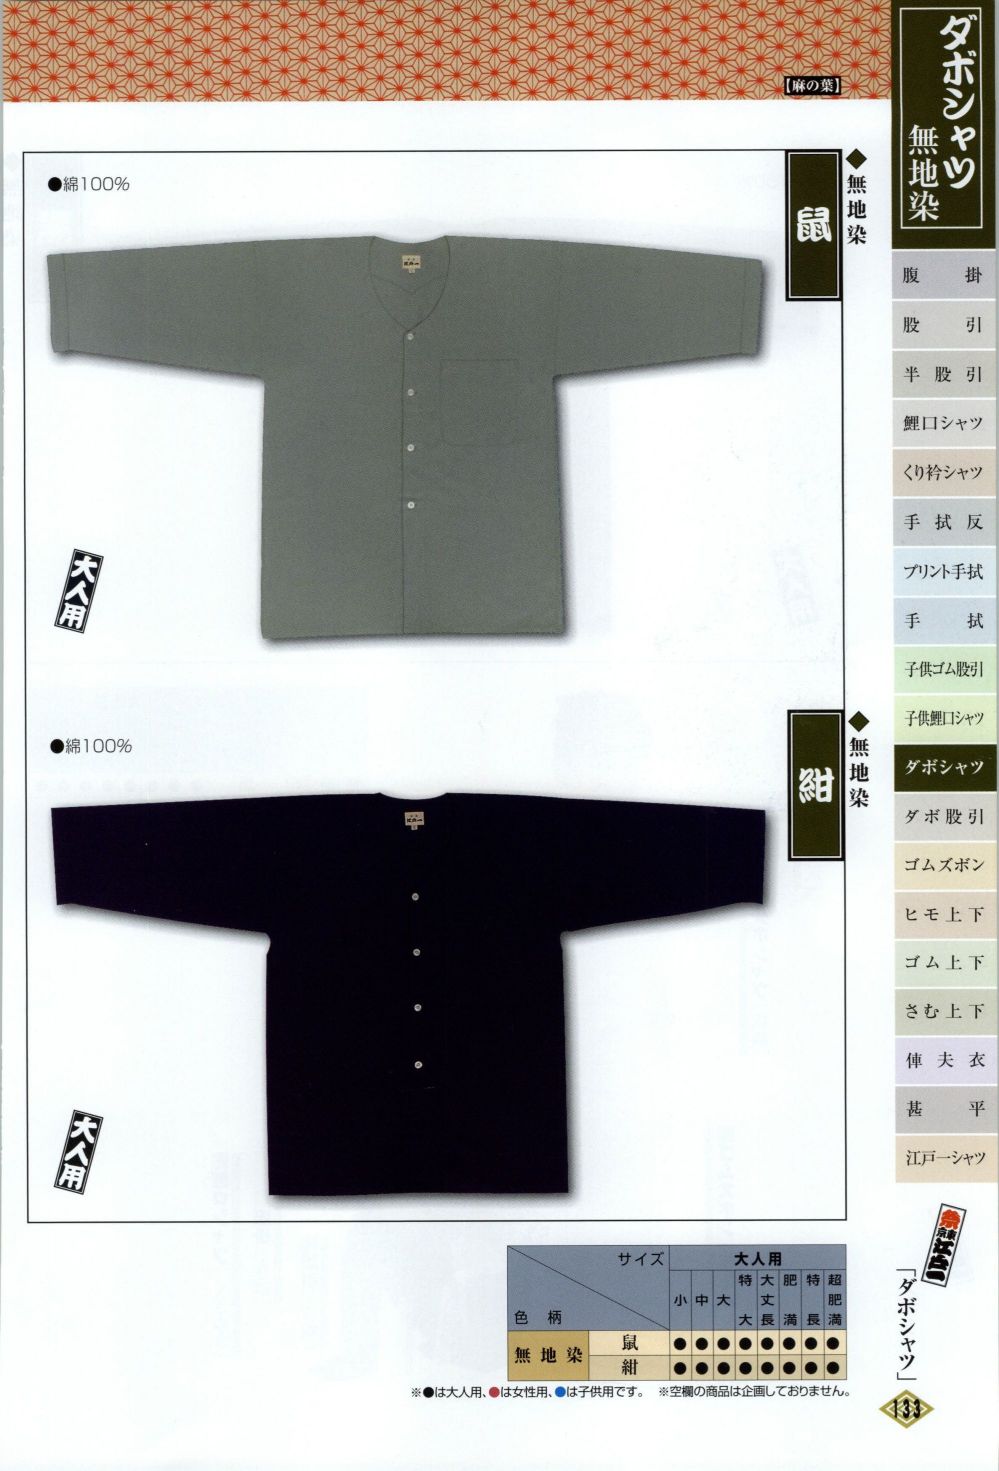 ユニフォーム1 江戸一のダボシャツ DABOSHATSU-2